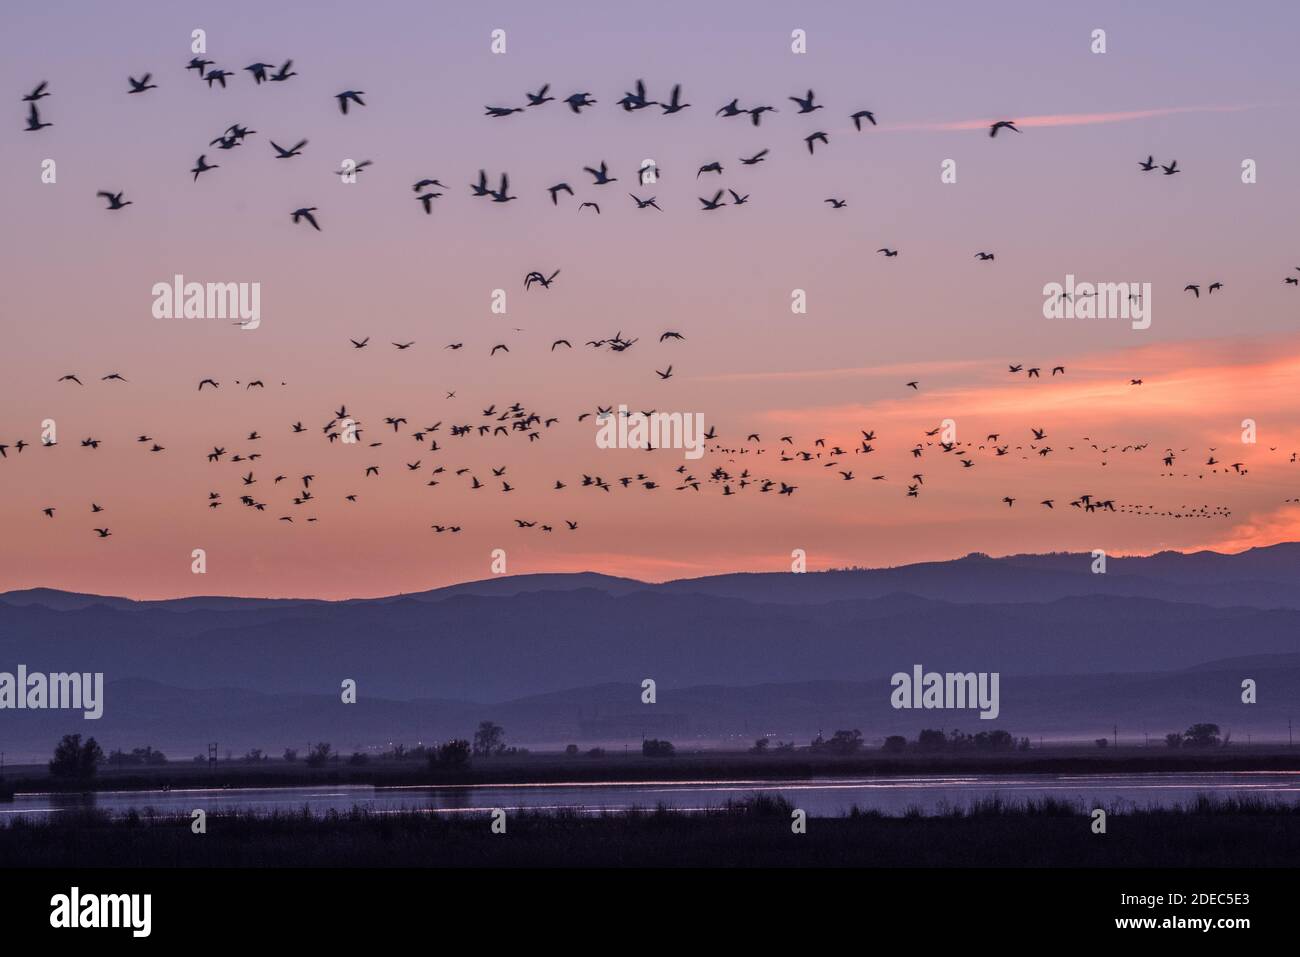 Des troupeaux massifs d'oies des neiges (Anser caerulescens) et d'oies de Ross survolent le ROS de Sacramento à l'automne, à l'arrivée des oiseaux migrateurs. Banque D'Images